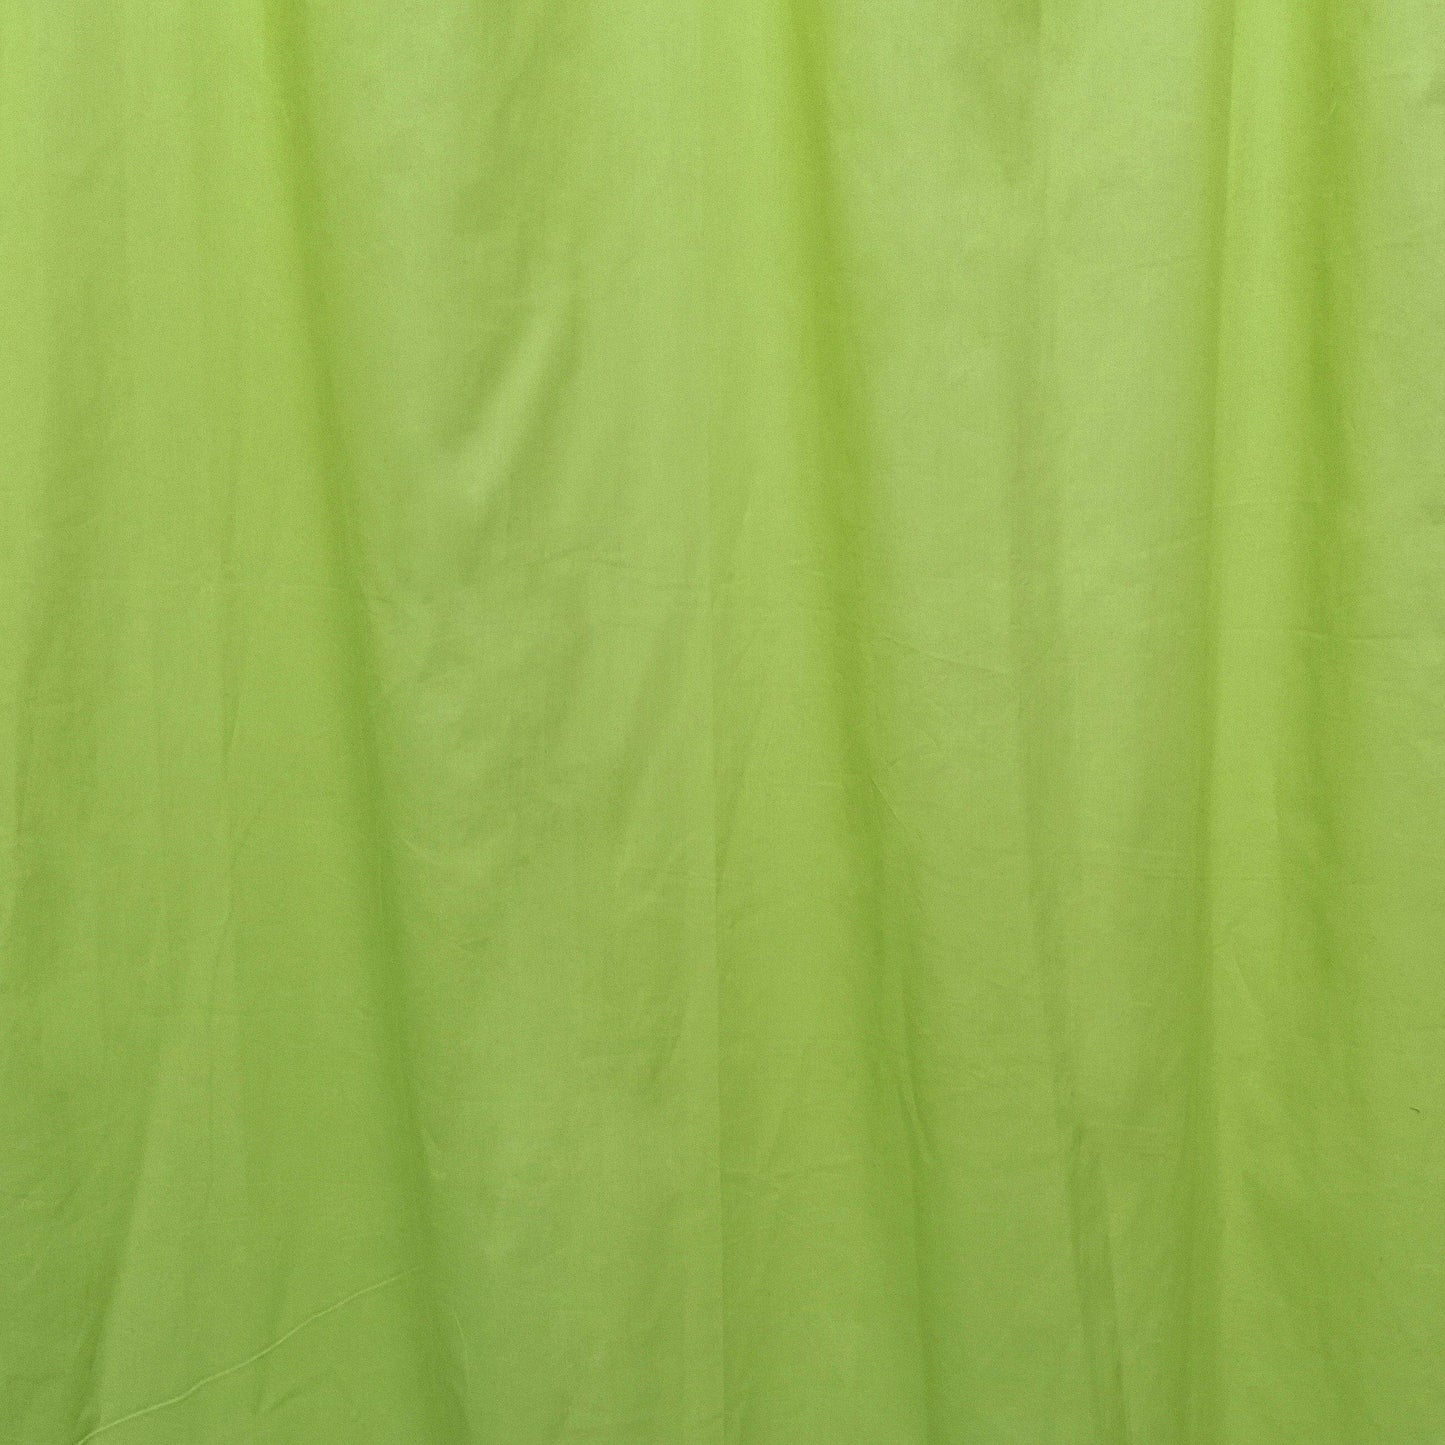 Lime Green Curtain Pair - The Teal Thread